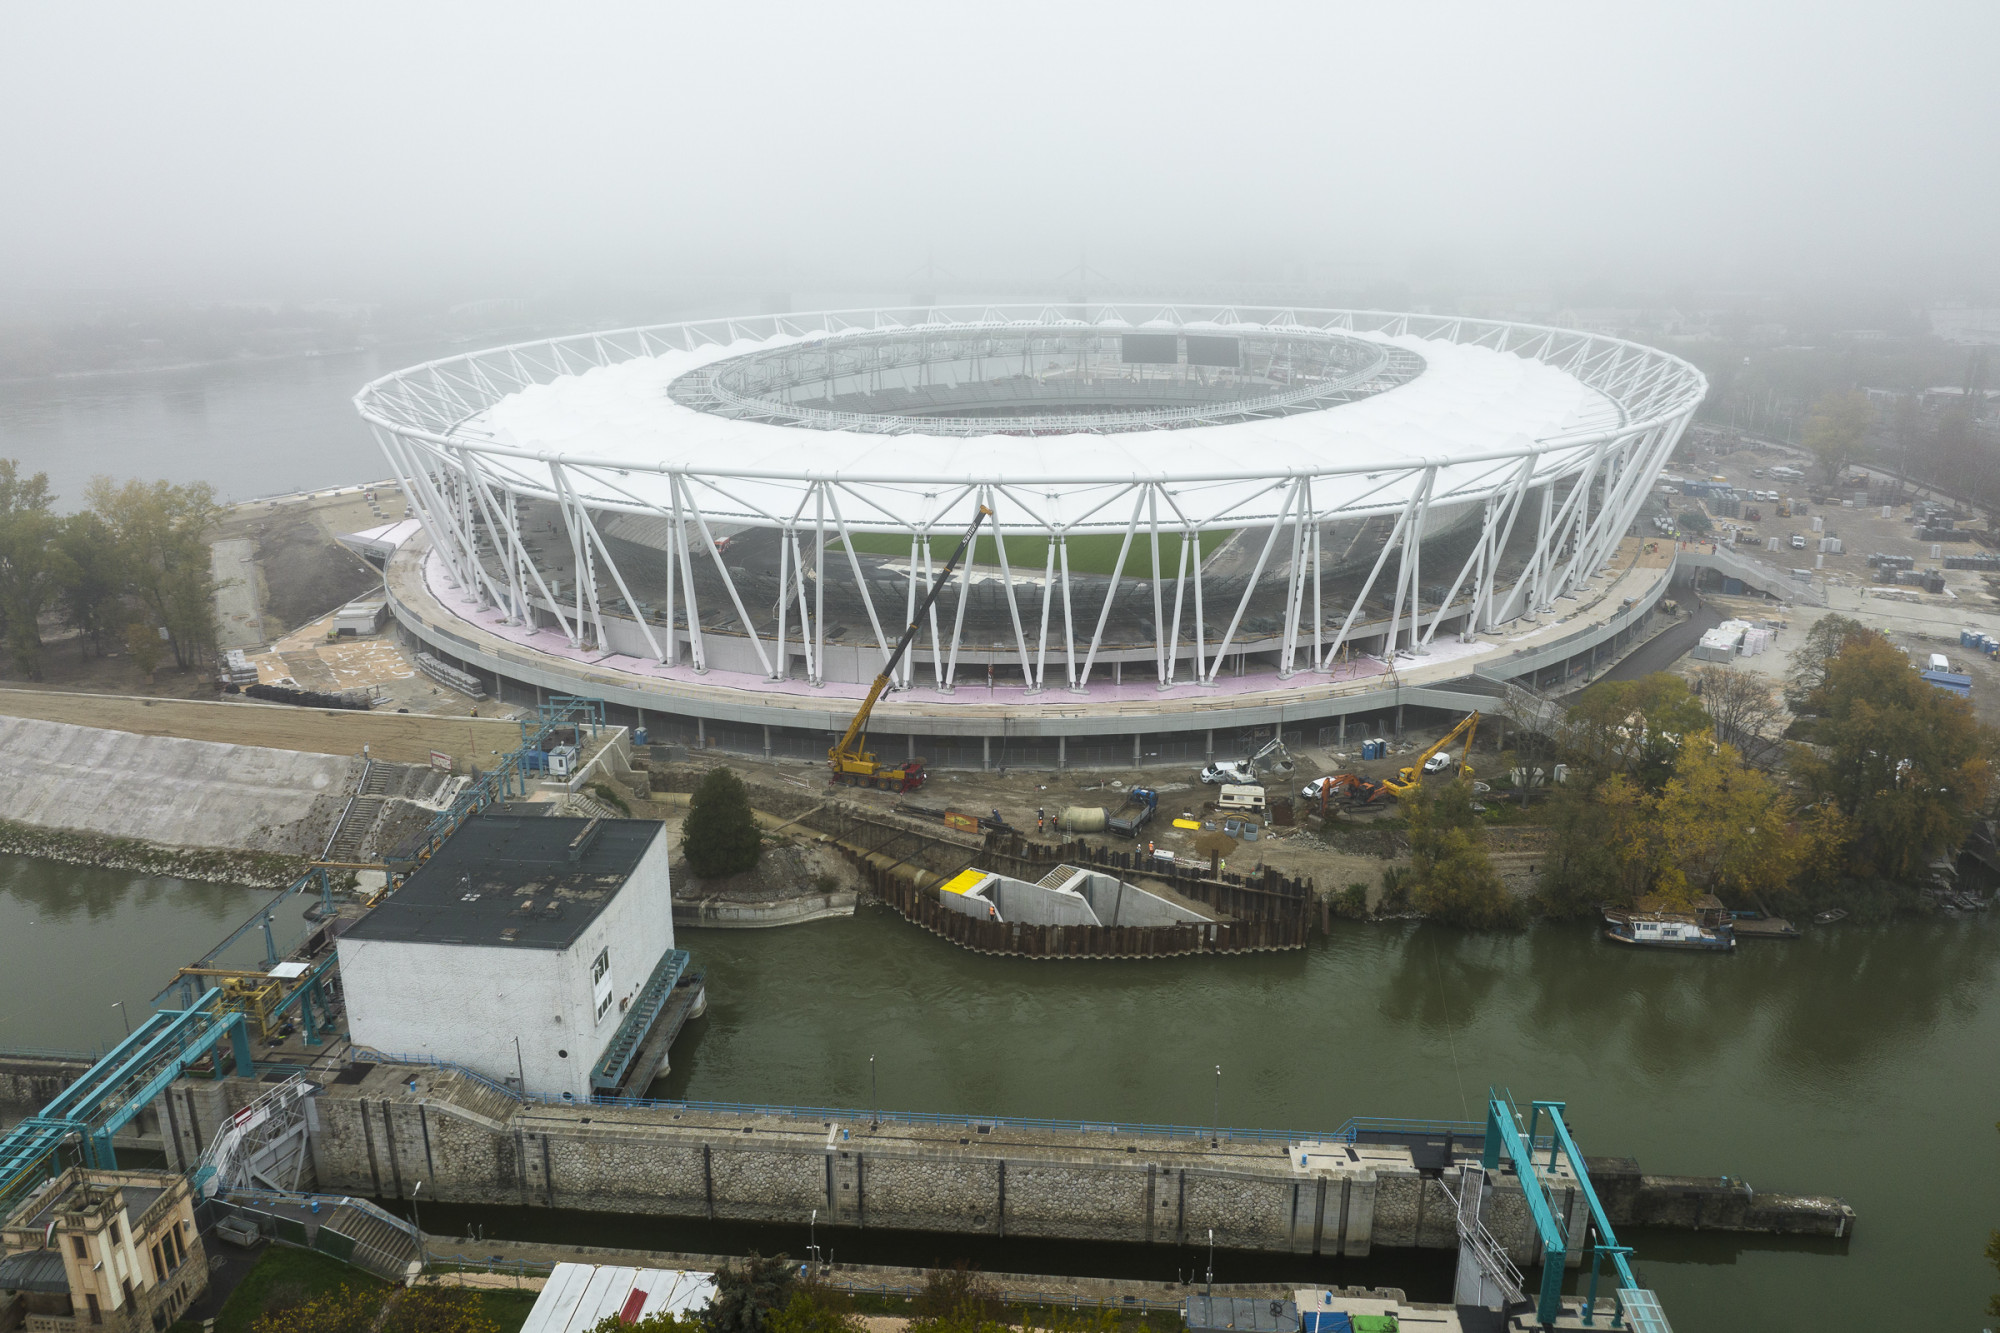 Annyi lett a stadion, hogy Szalay-Bobrovniczky Kristóf még egy új ügynökséget is gründol az üzemeltetésükre